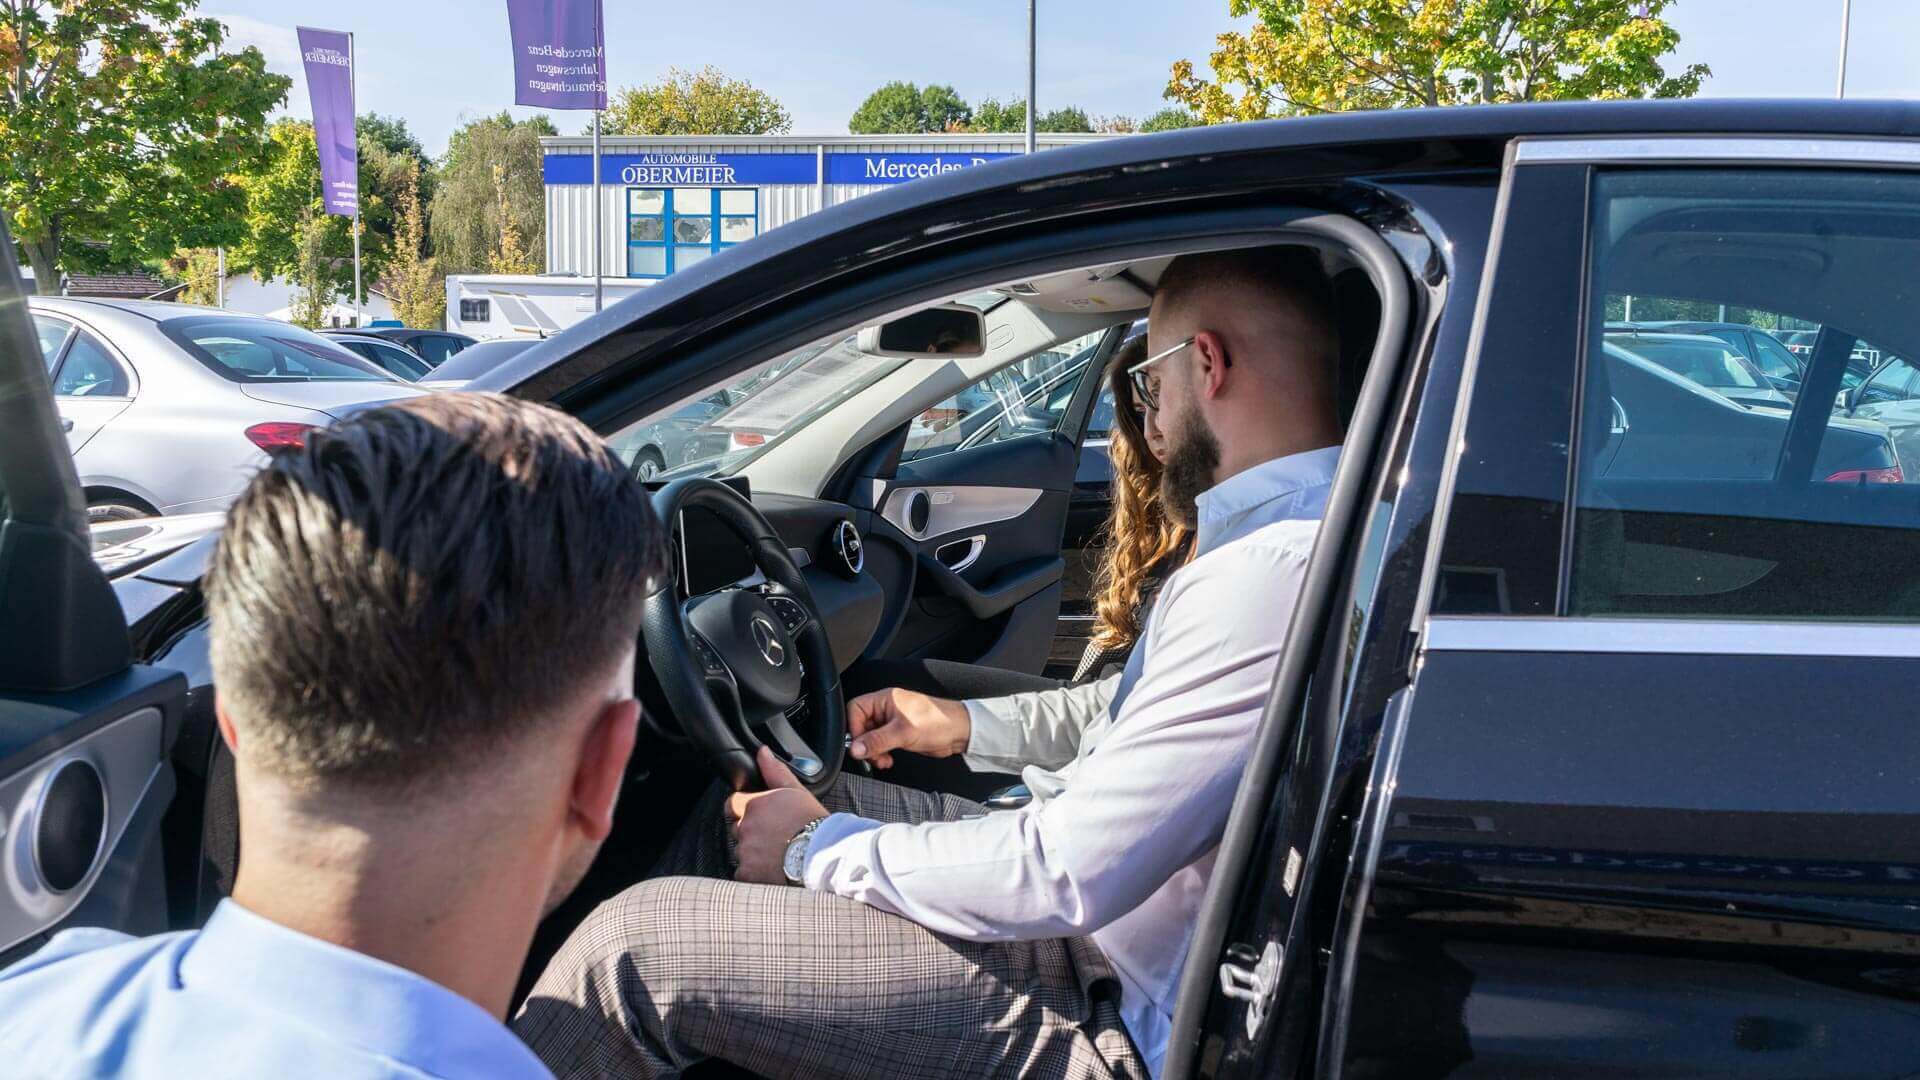 Kundengespräch vor Mercedes Gebrauchtwagen bei Automobile Obermeier in Meckenheim